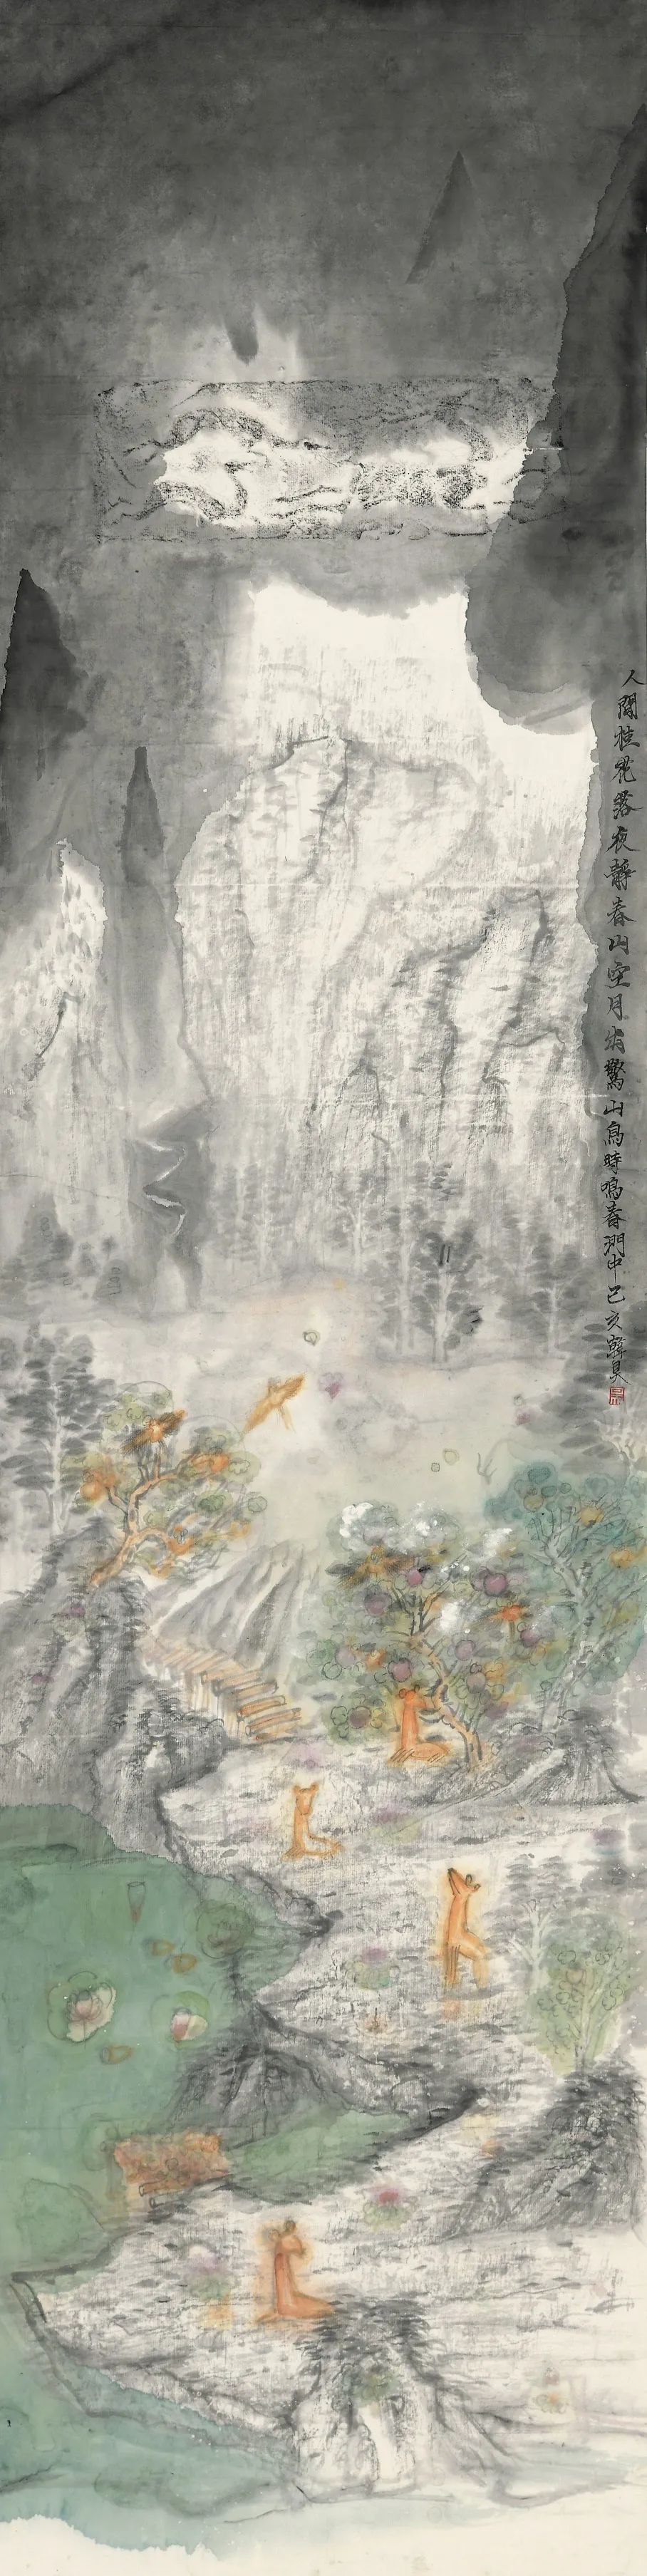 中国艺术研究院青年艺术家推荐计划（第二批）“桃源仙梦——韩昊作品展”云上开展